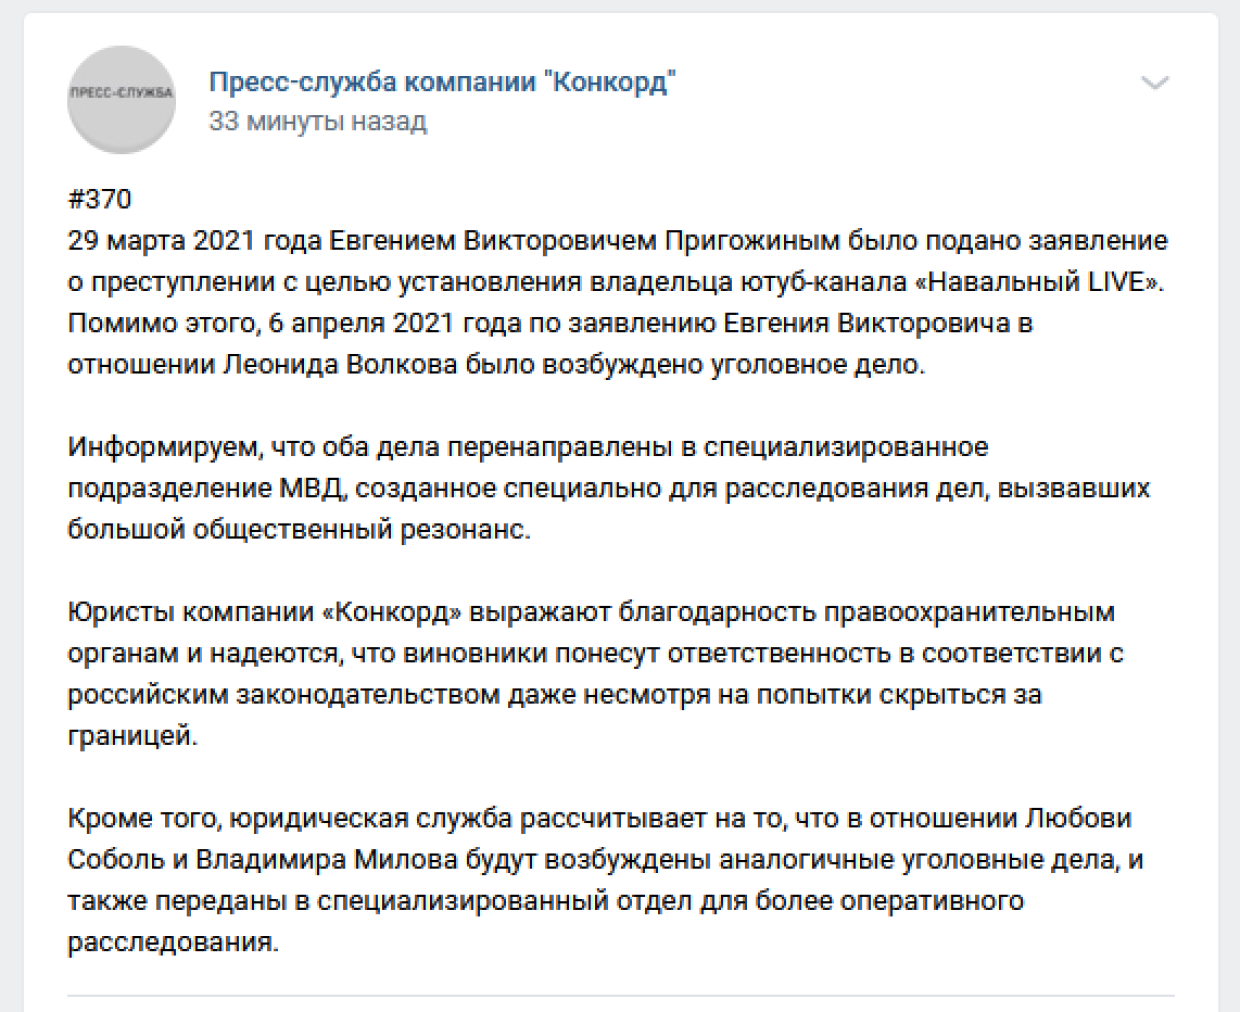 Поисками владельца «Навальный Live» займется спецподразделение МВД